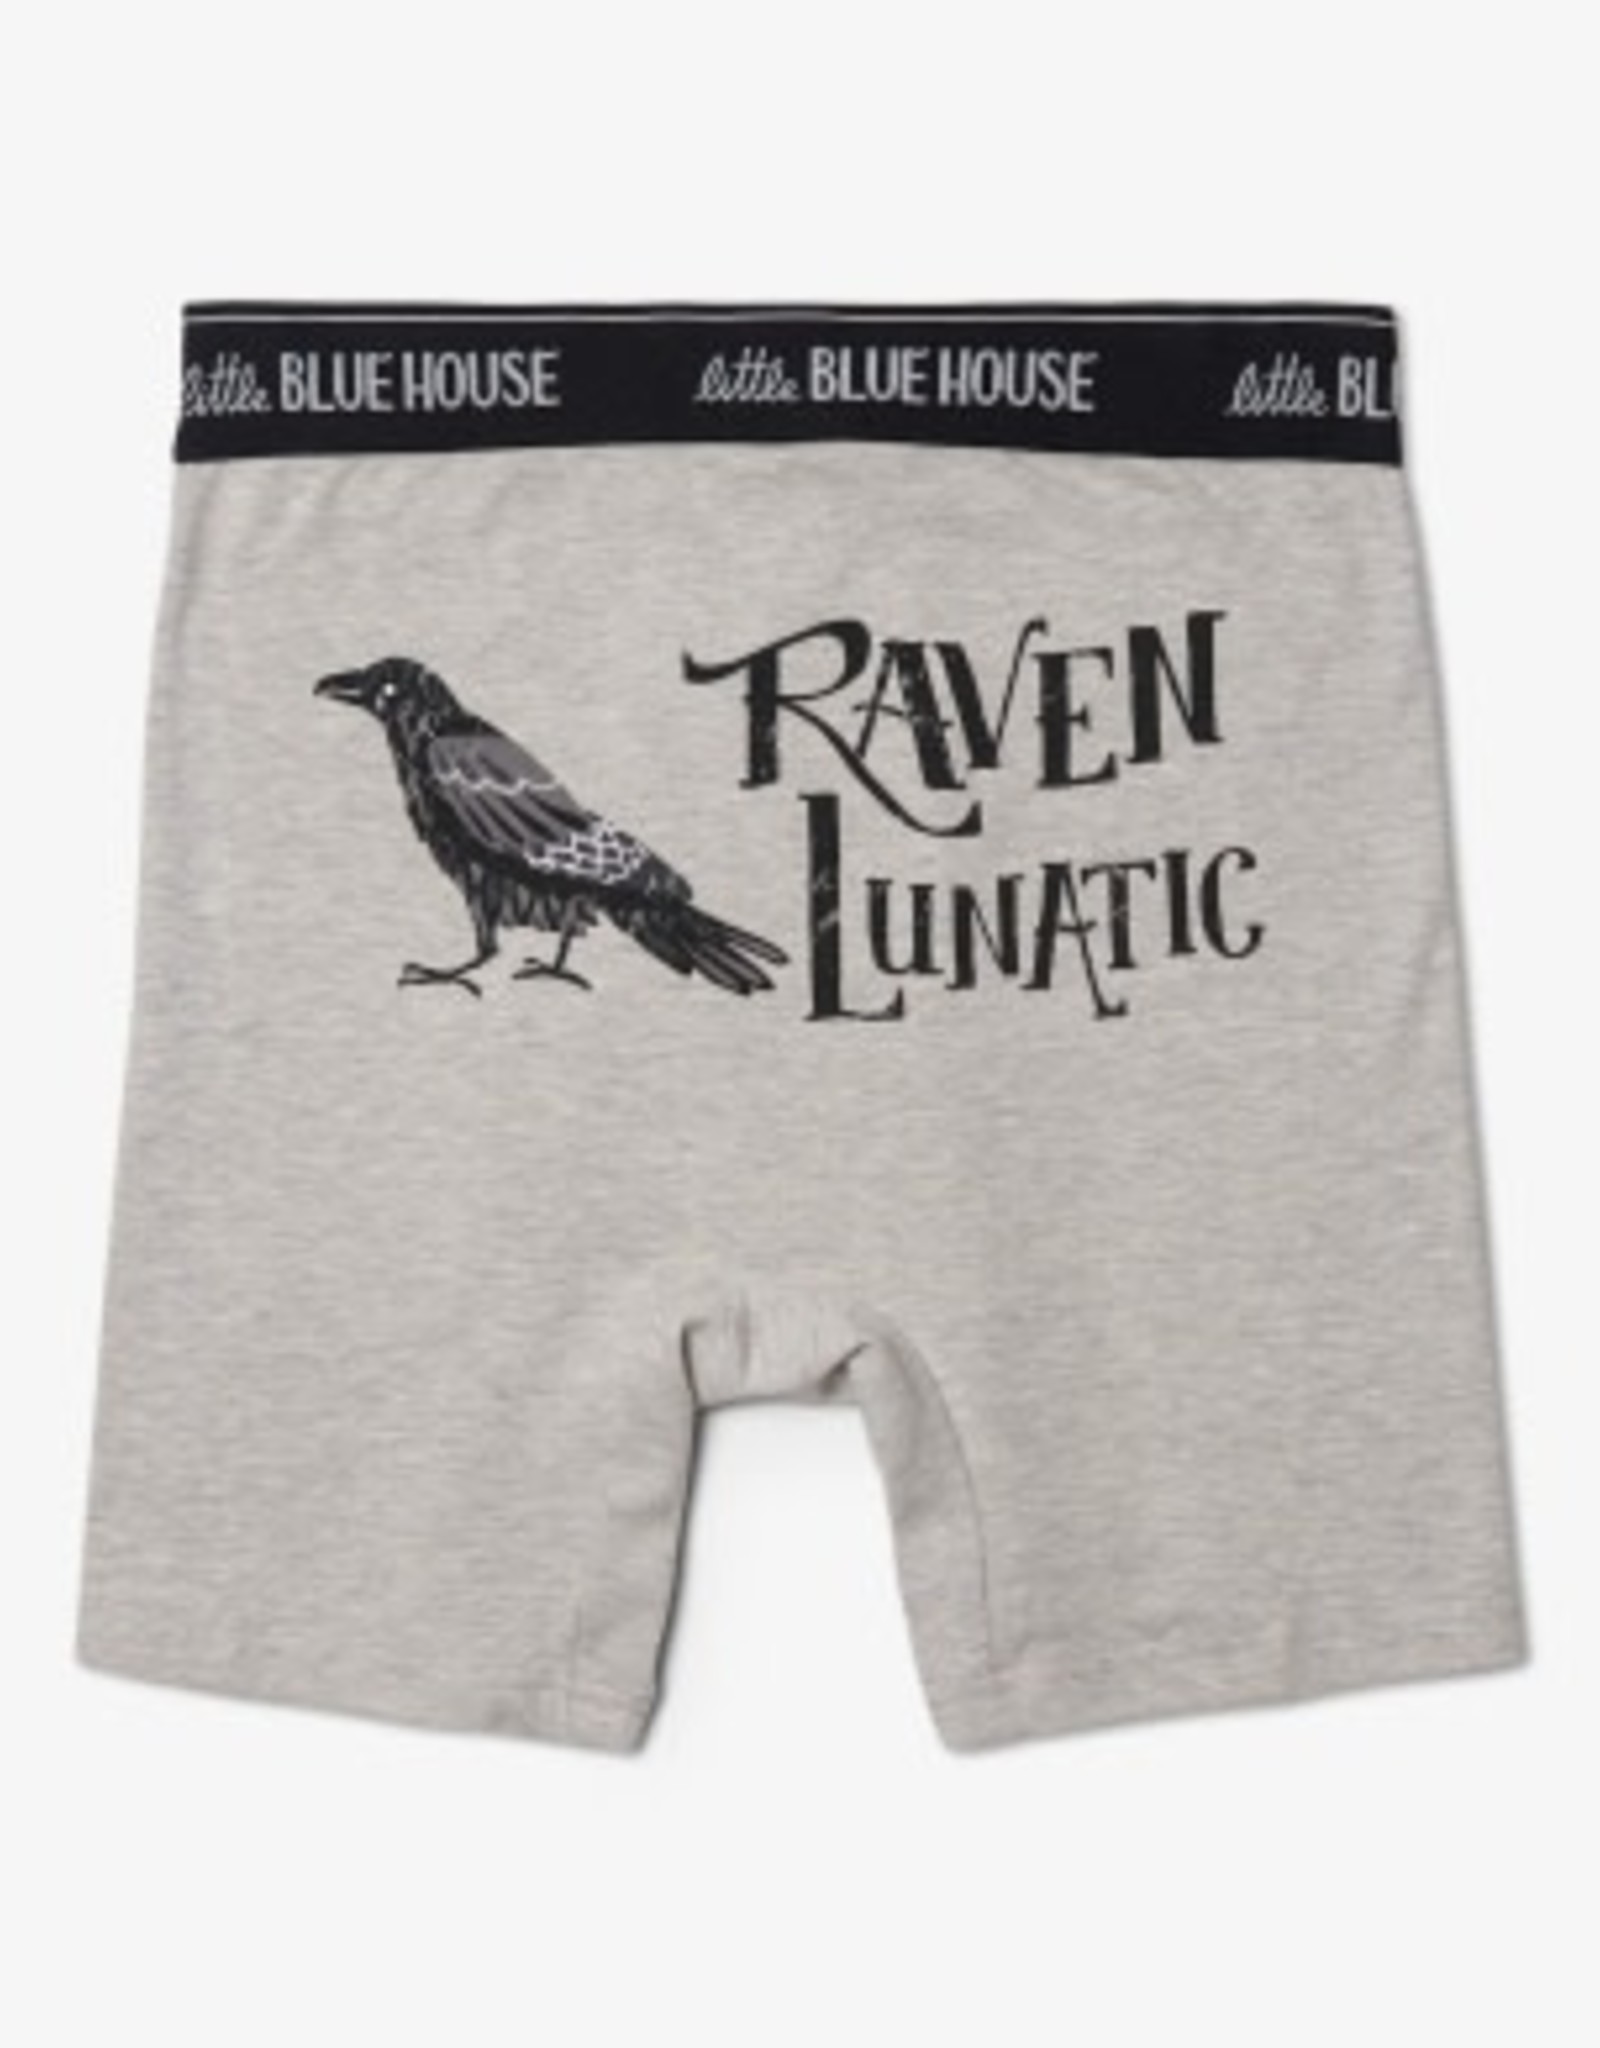 Little Blue House Boxer Briefs - Raven Lunatic (L)